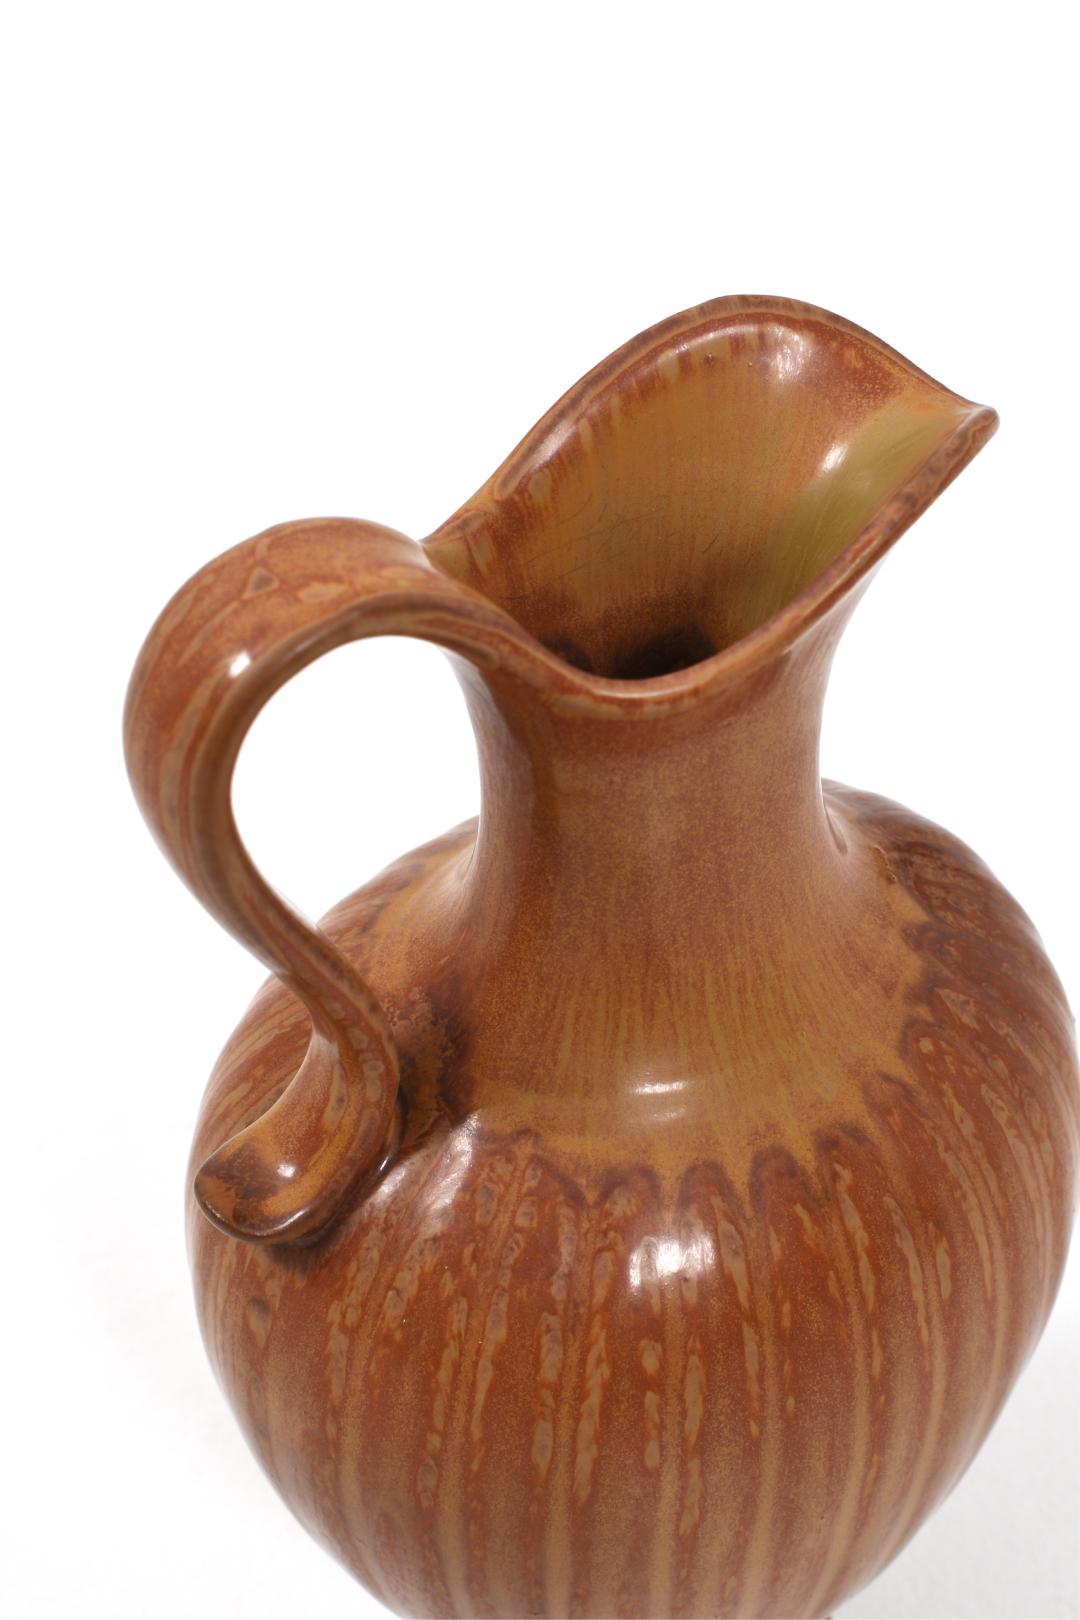 Die Vase ist in gutem Zustand, aber da es sich um ein gebrauchtes Sortiment handelt, gibt es kleinere Schönheitsfehler. Siehe die Nahaufnahme der Vase. Insgesamt ist die Vase in sehr gutem Zustand. Man kann sie so wie sie ist vor sich haben oder mit